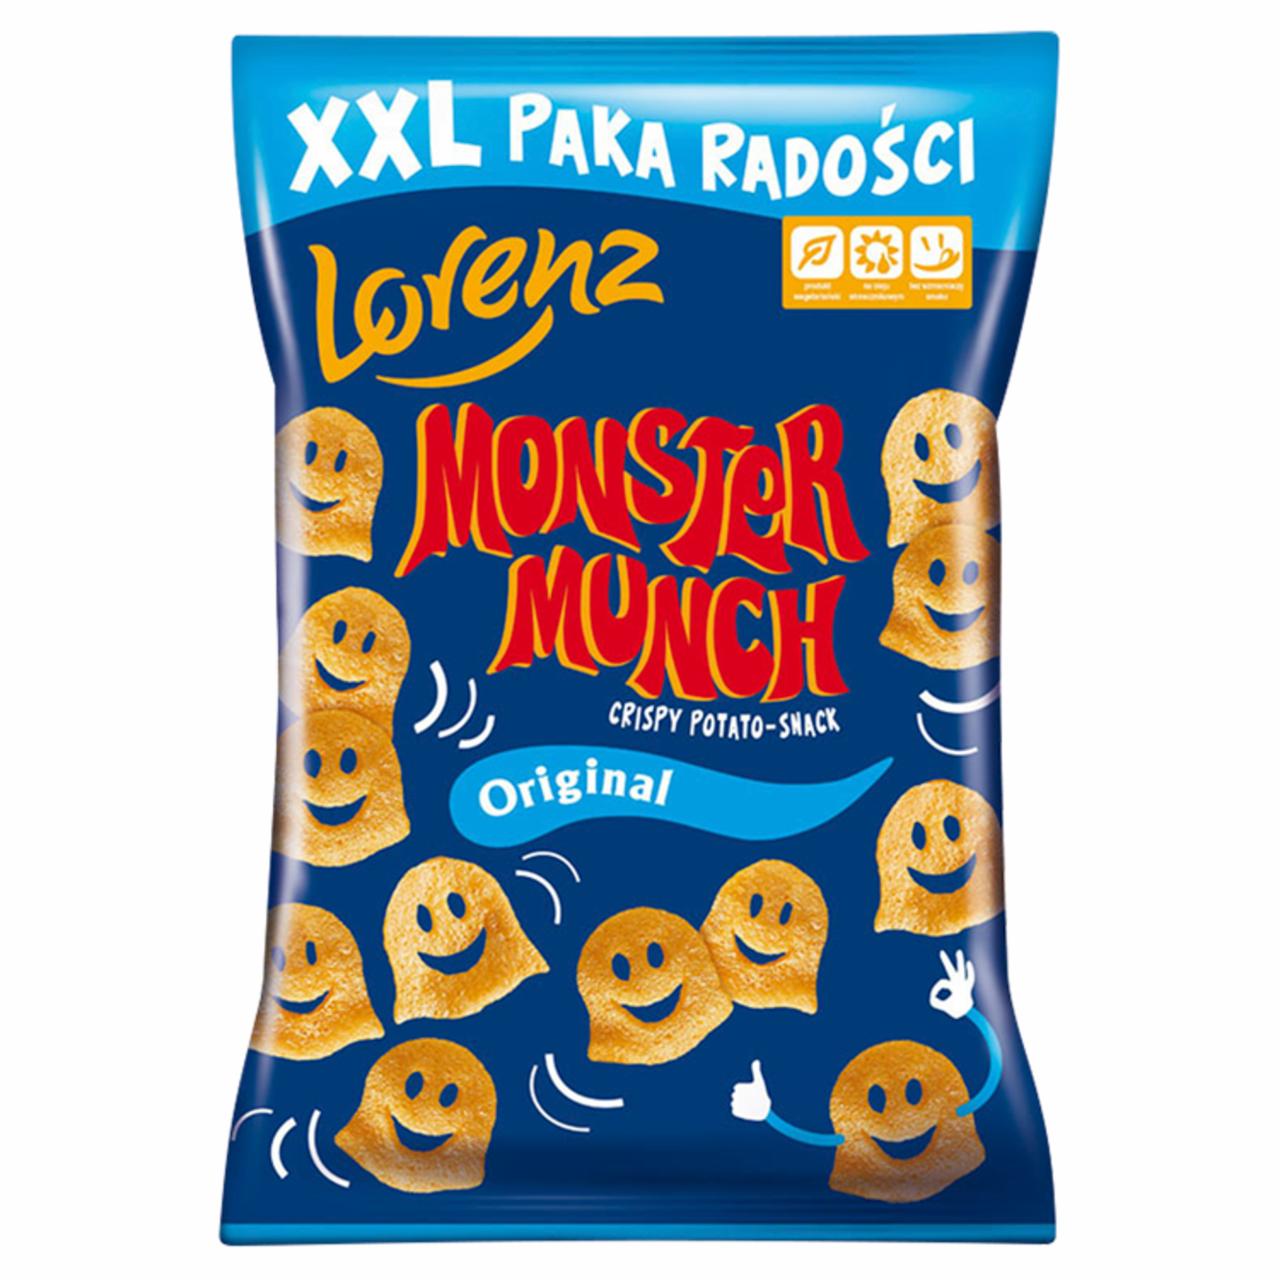 Zdjęcia - Monster Munch Original Chrupki ziemniaczane 160 g